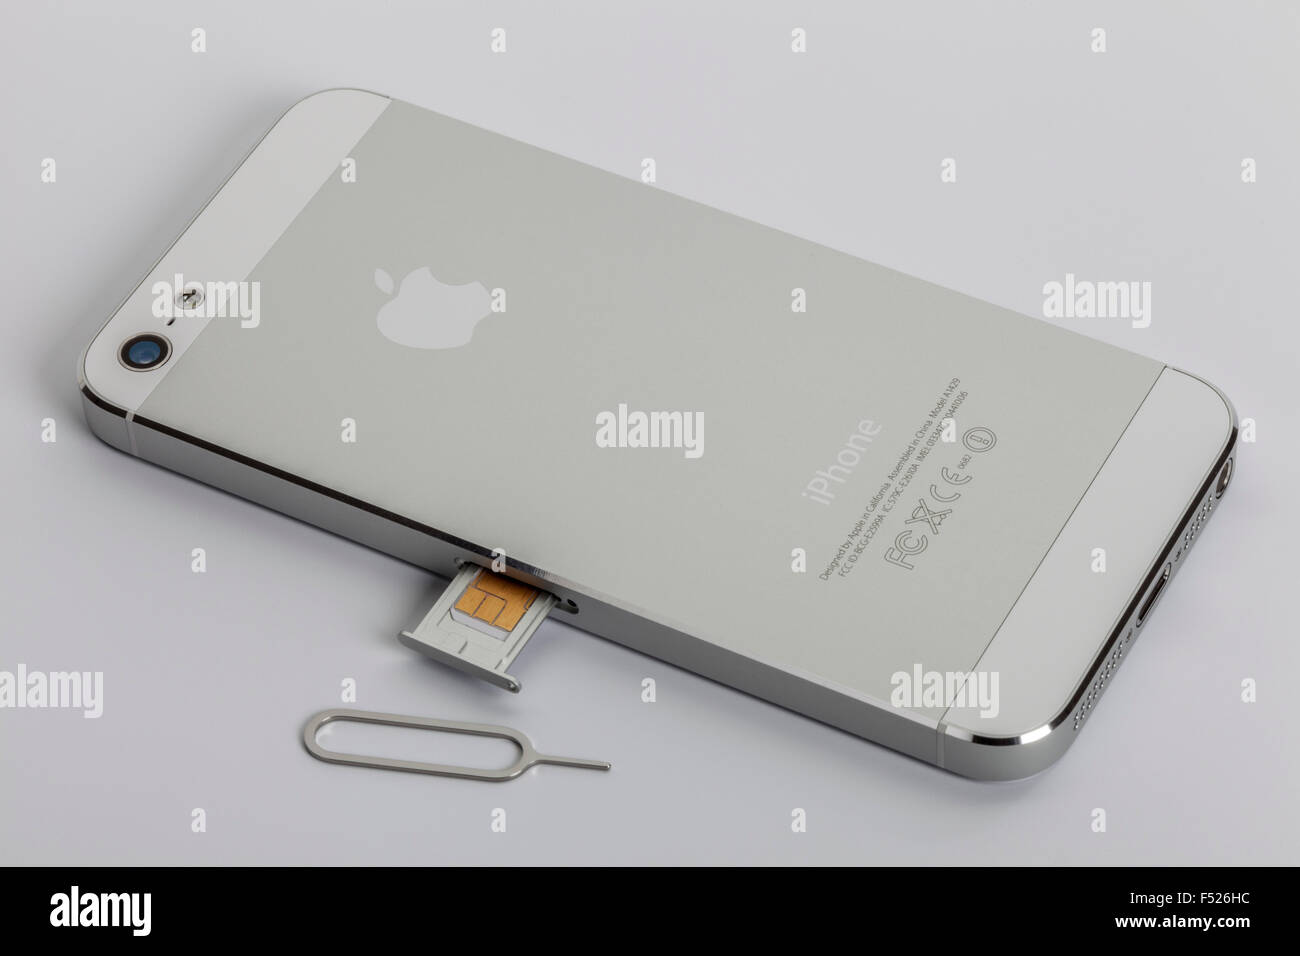 Exclu : Découvrez la nano SIM Free Mobile pour l'iPhone 5